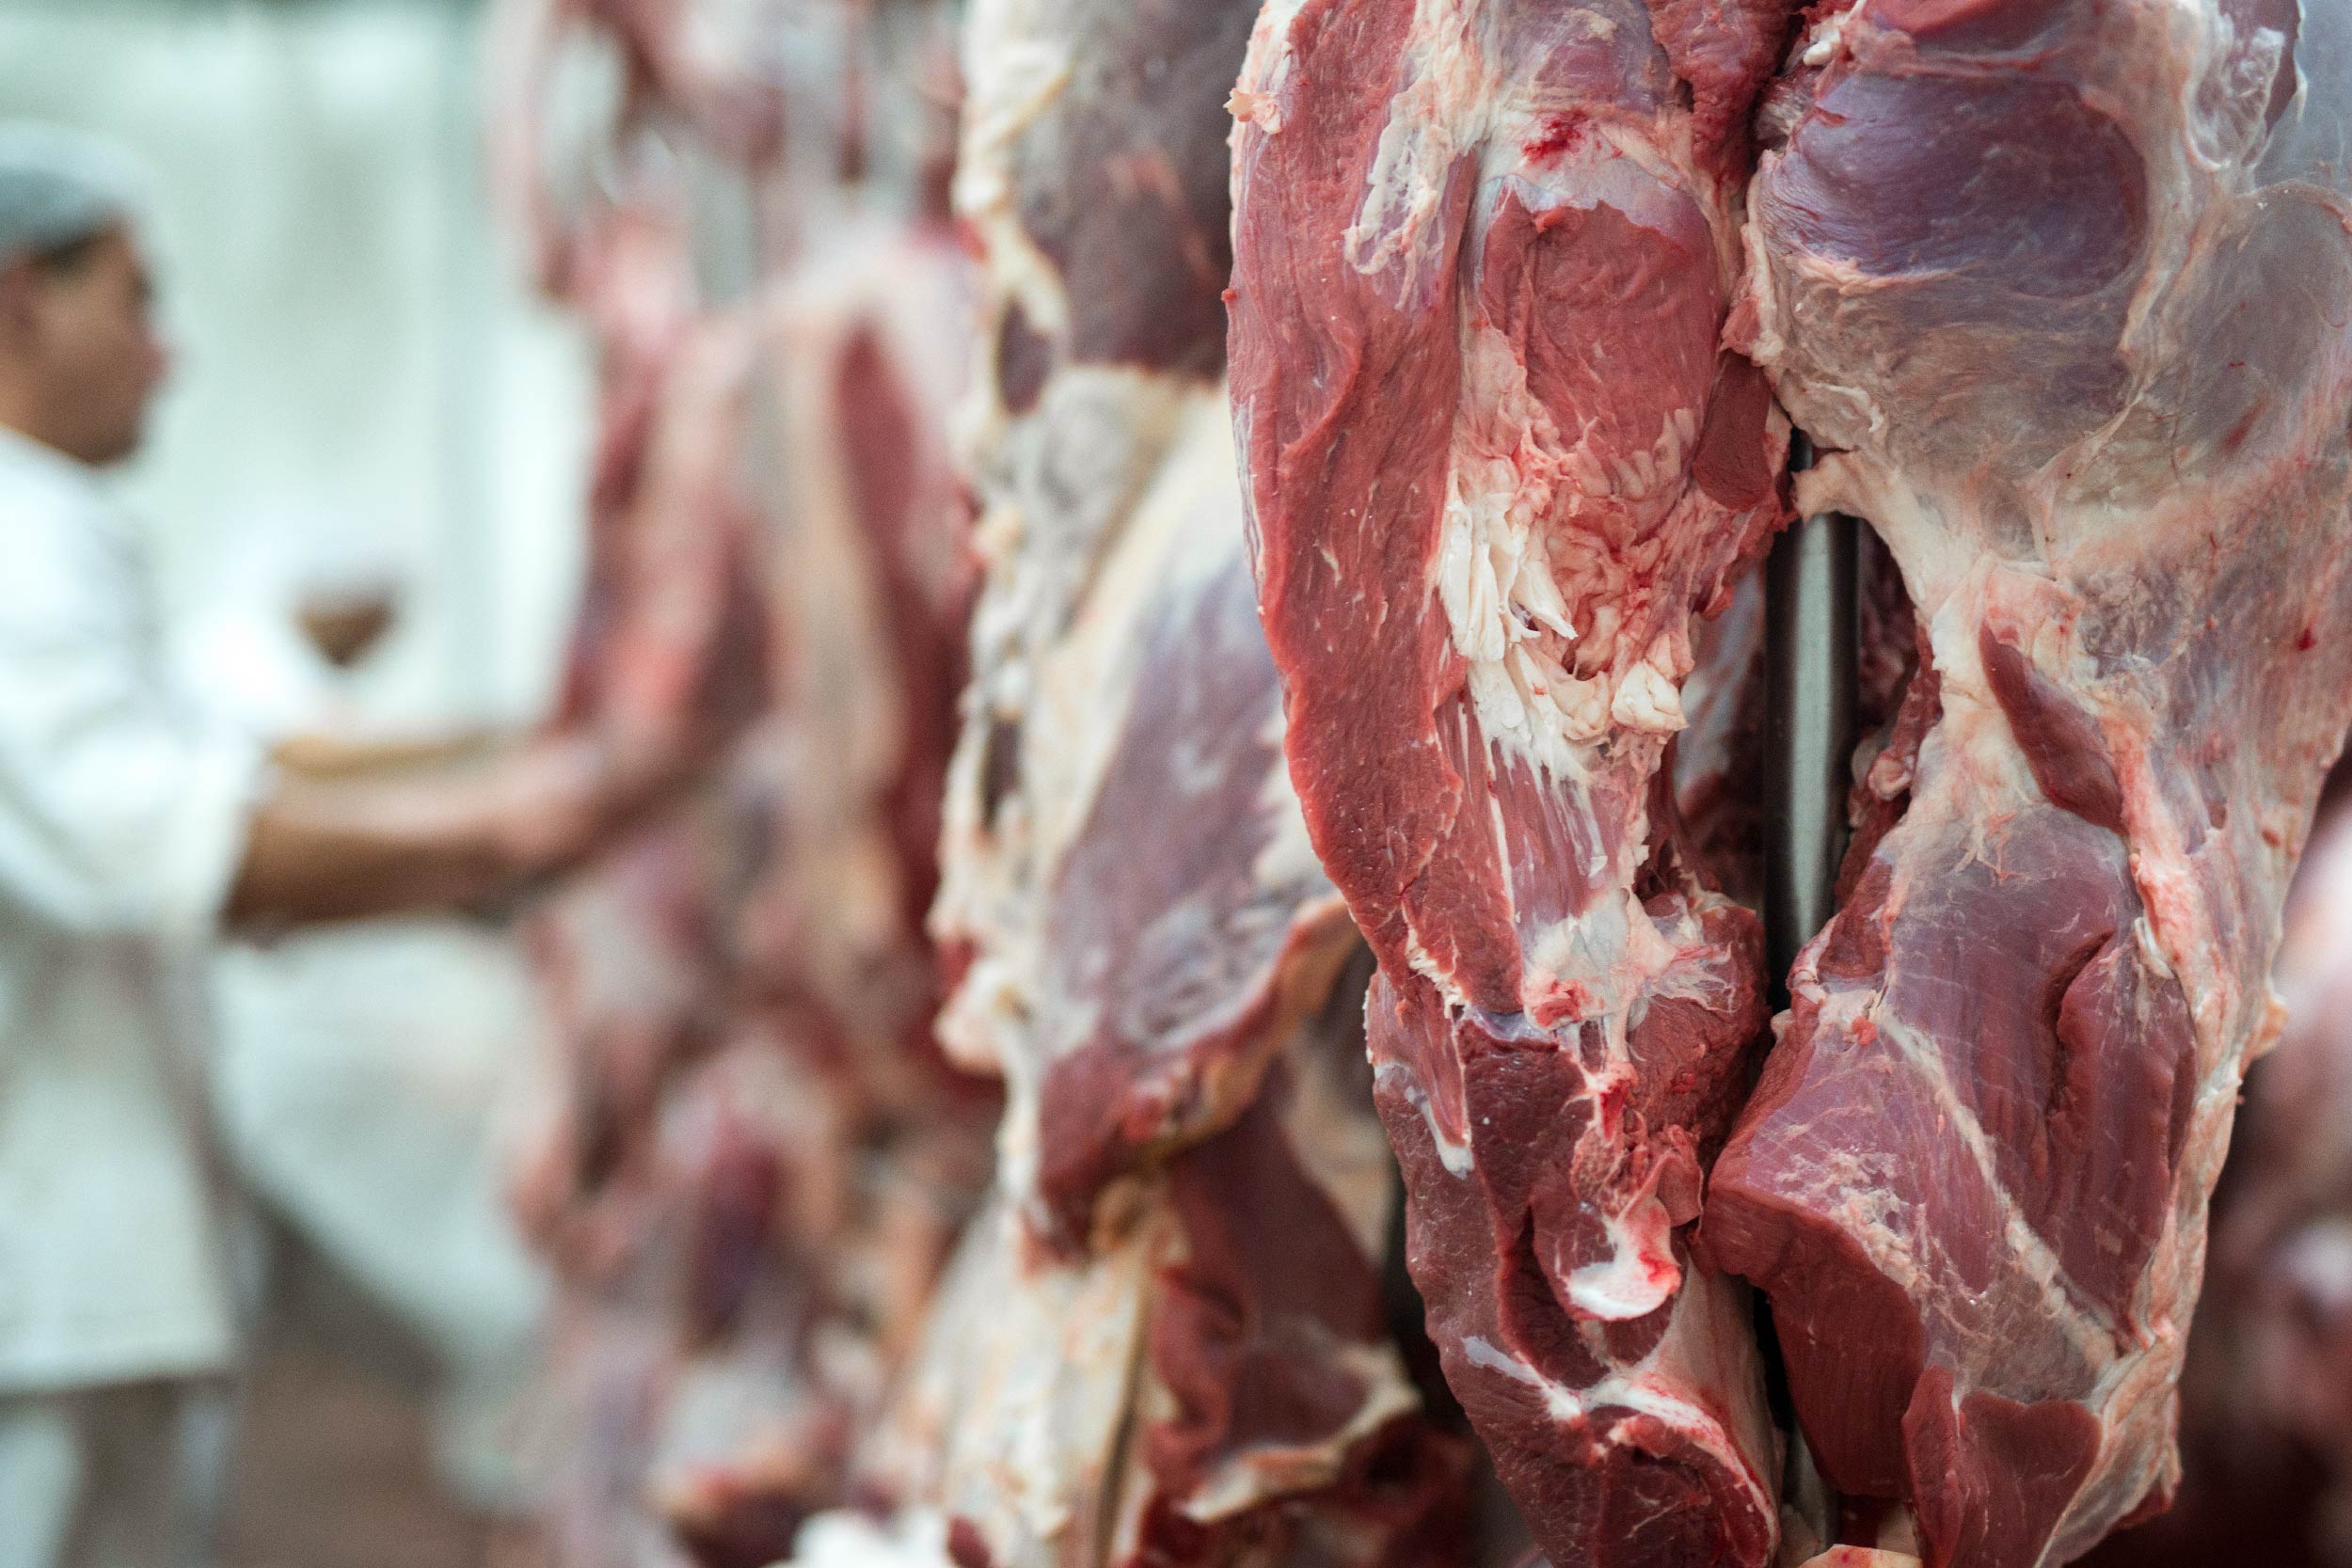 Fotografia de cortes de carne animal penduradas em açougue